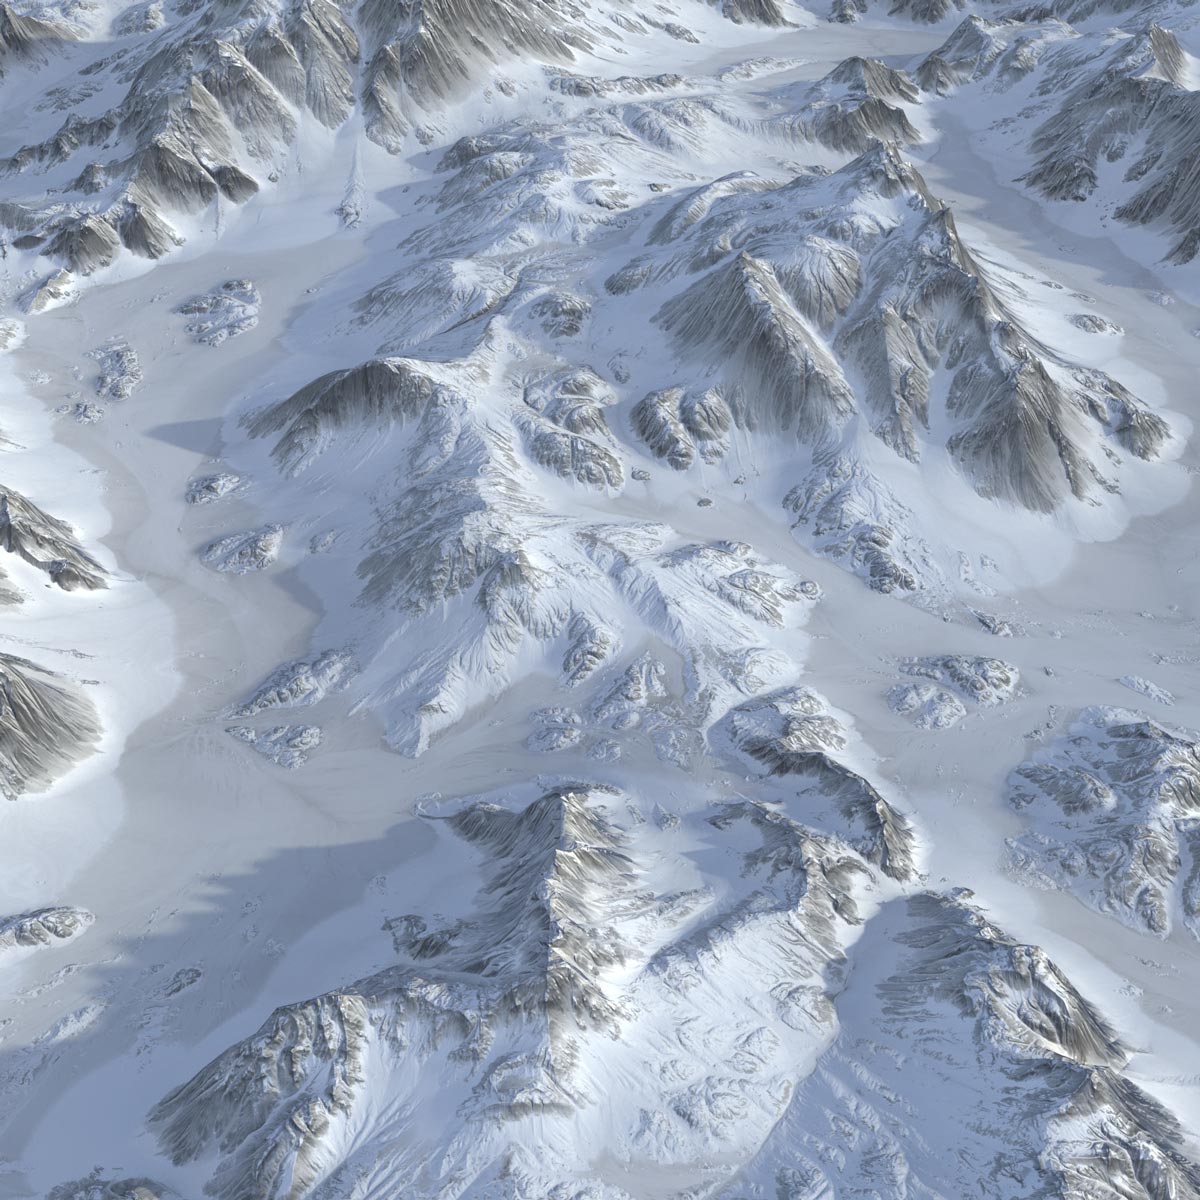 A 3D snow mountain by La Fleur Studio, one of our favorite 3D models.